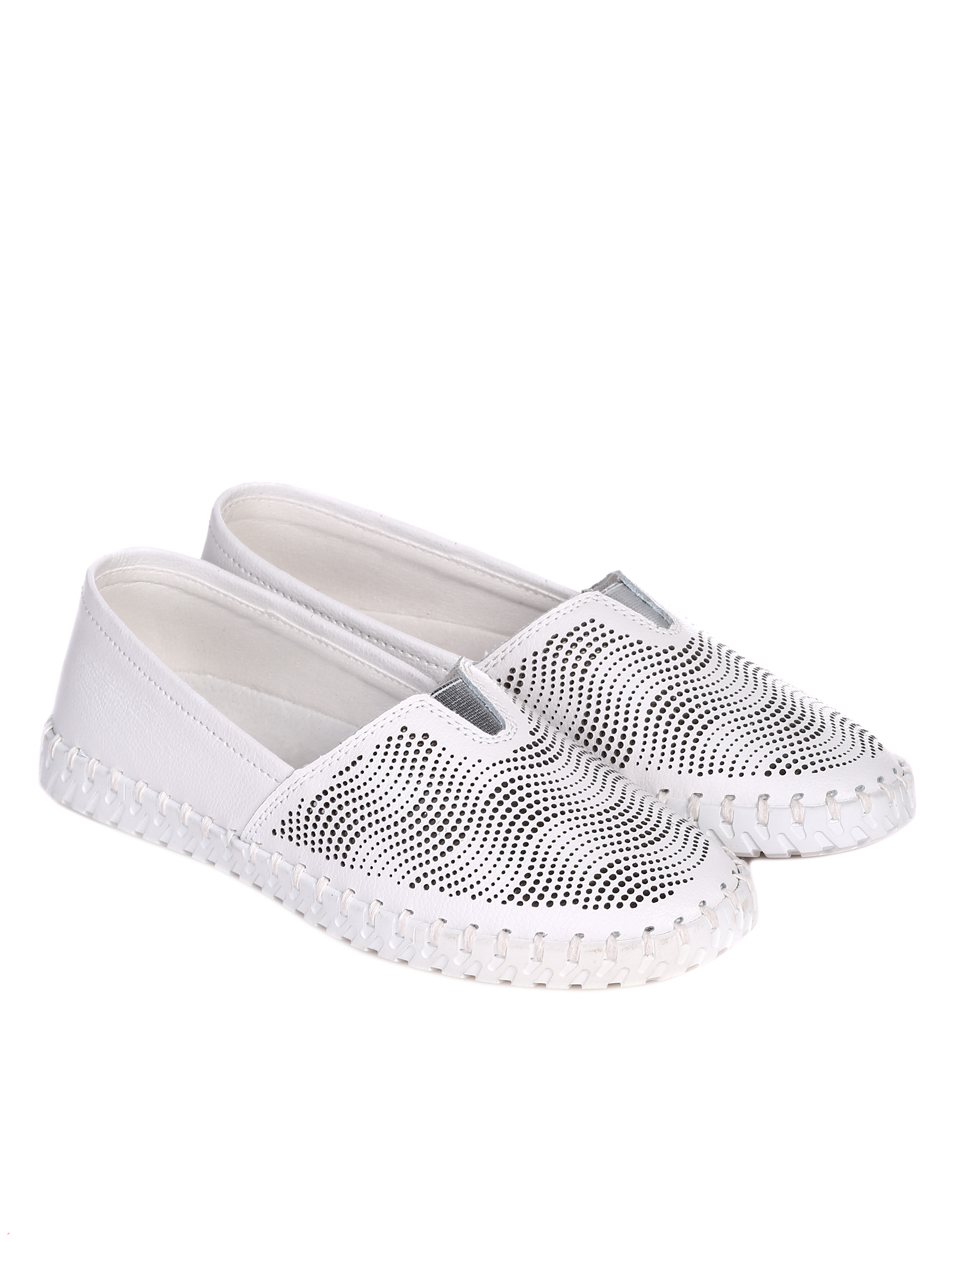 Ежедневни дамски обувки от естествена кожа в бяло 3AF-22156 white